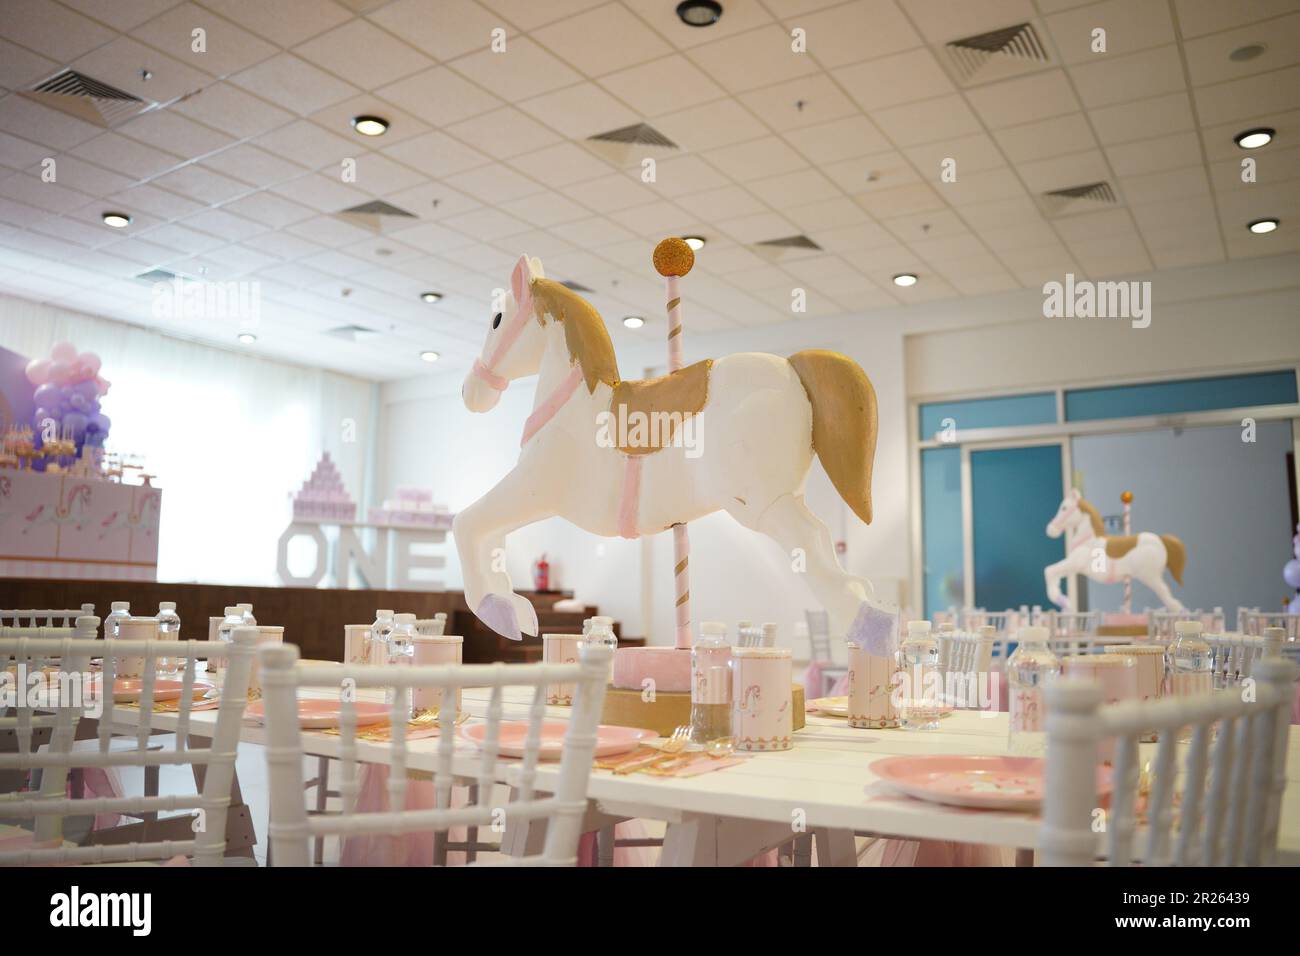 Kindergeburtstagsparty Pferdedekoration. Karussell-Party in Weiß, Pink und Gold mit Mittagstisch. Festliche Dekoration für die Geburtstagsparty eines kleinen Mädchens Stockfoto